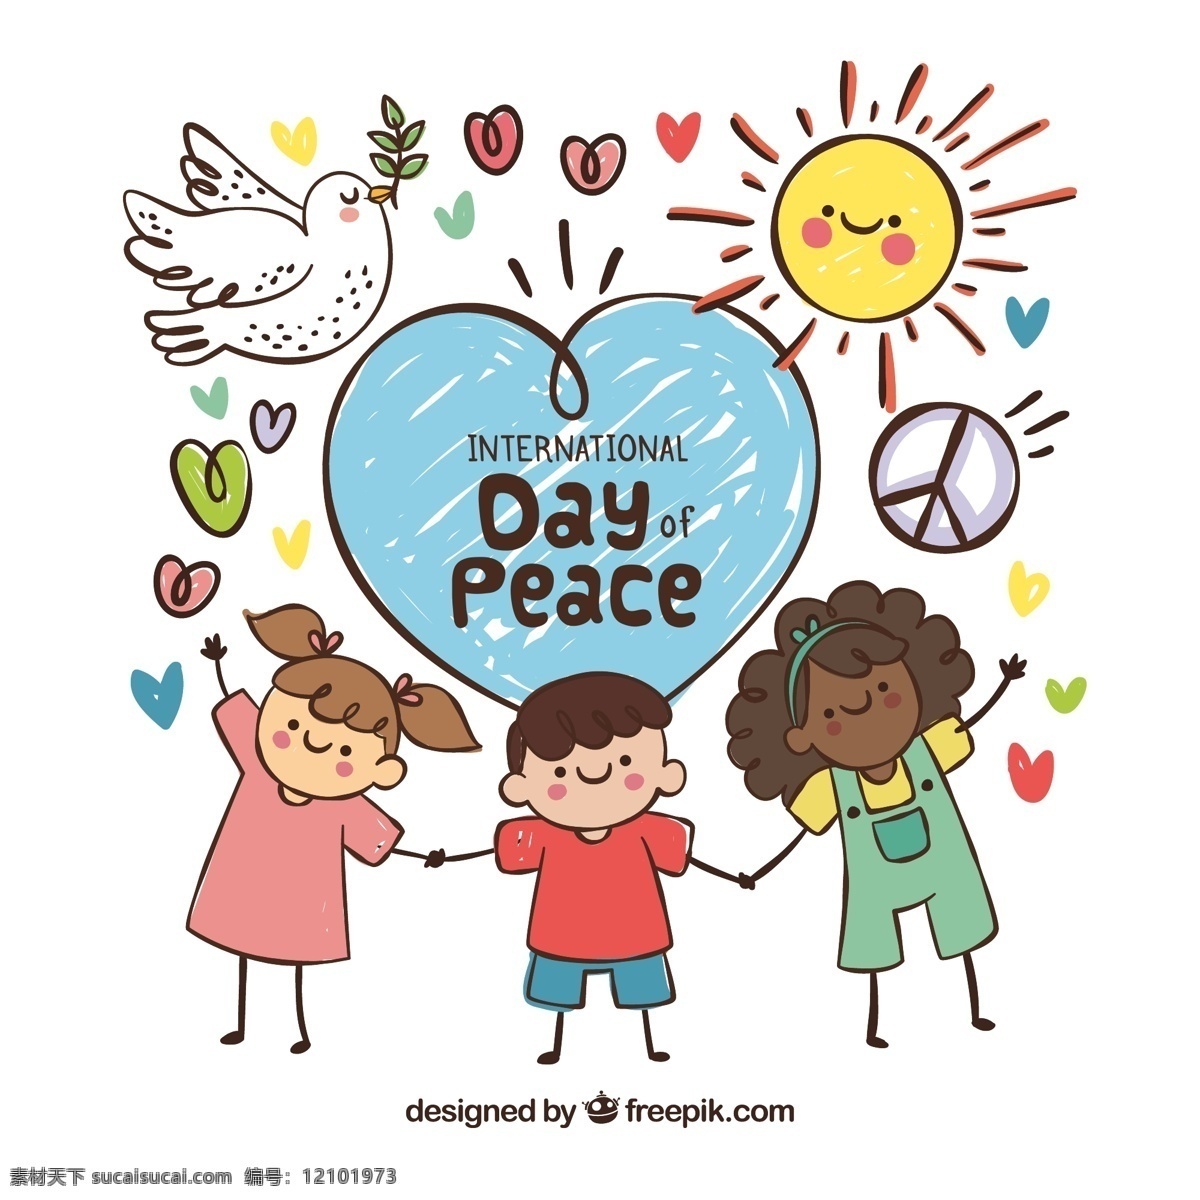 彩绘 国际 平日 牵手 儿童 矢量 鸽子 太阳 爱心 男孩 女孩 nternational day of peace 国际和平日 动漫动画 动漫人物